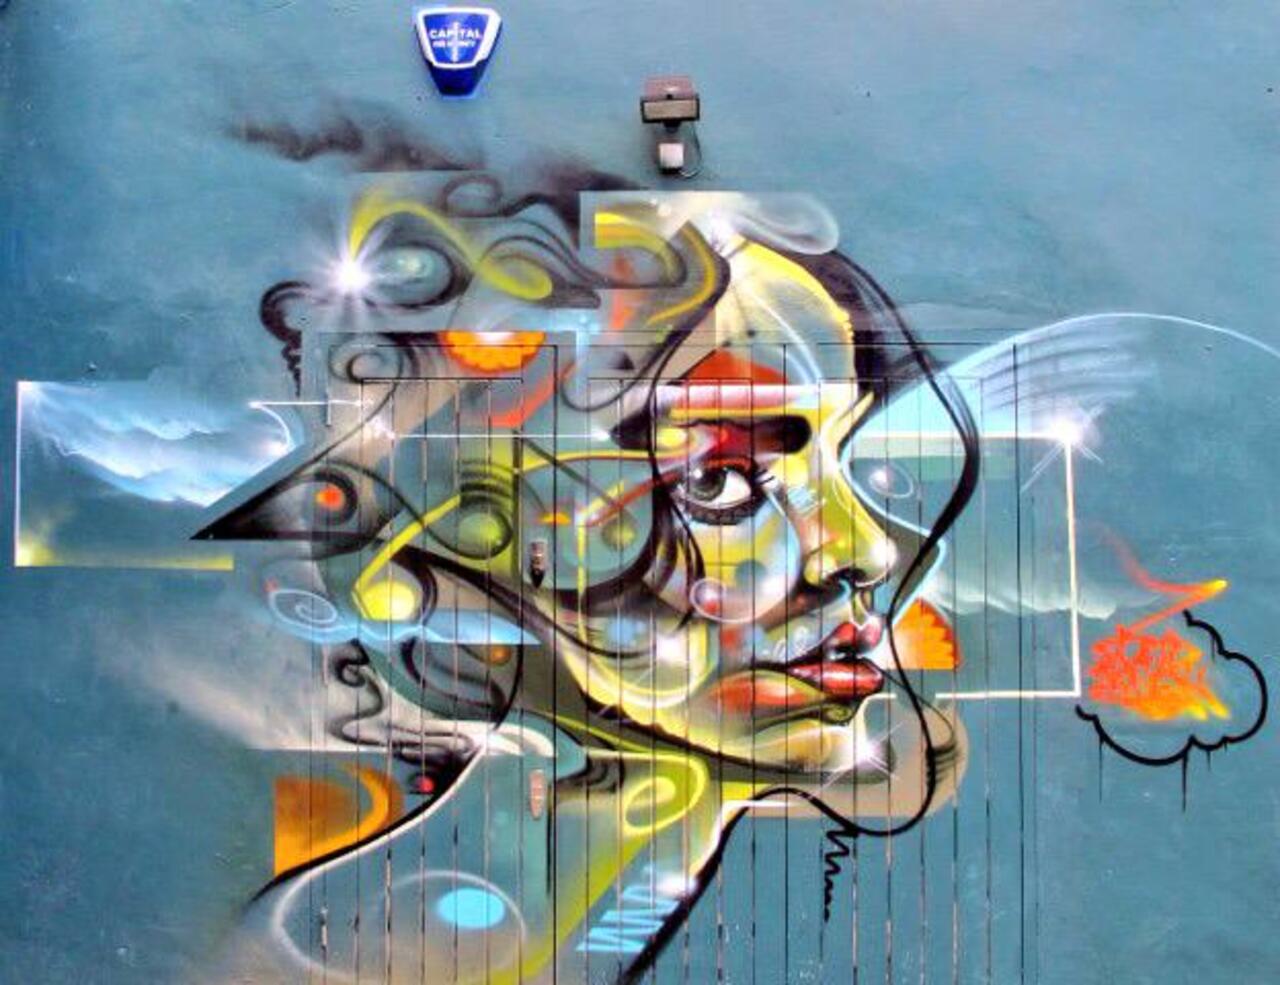 Mr Cenz
London
#streetart #art #mural #graffiti http://t.co/qybCZMsEus